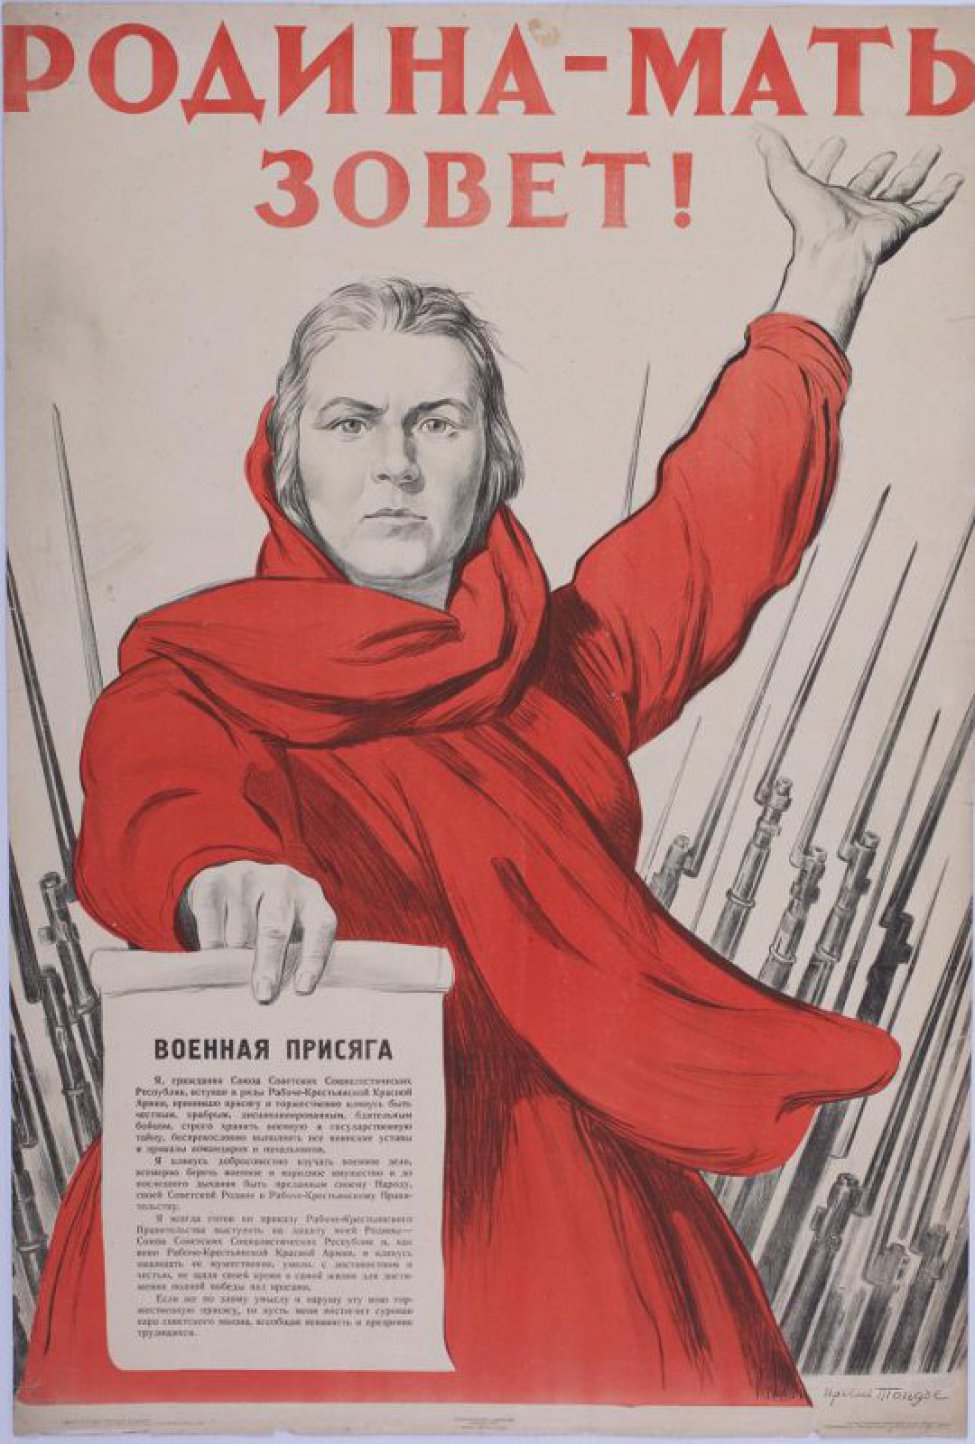 Изображена по колено женщина в красном платье. Левая рука поднята, в правой держит белый лист с текстом военной присяги:" Я гражданин... трудящихся".